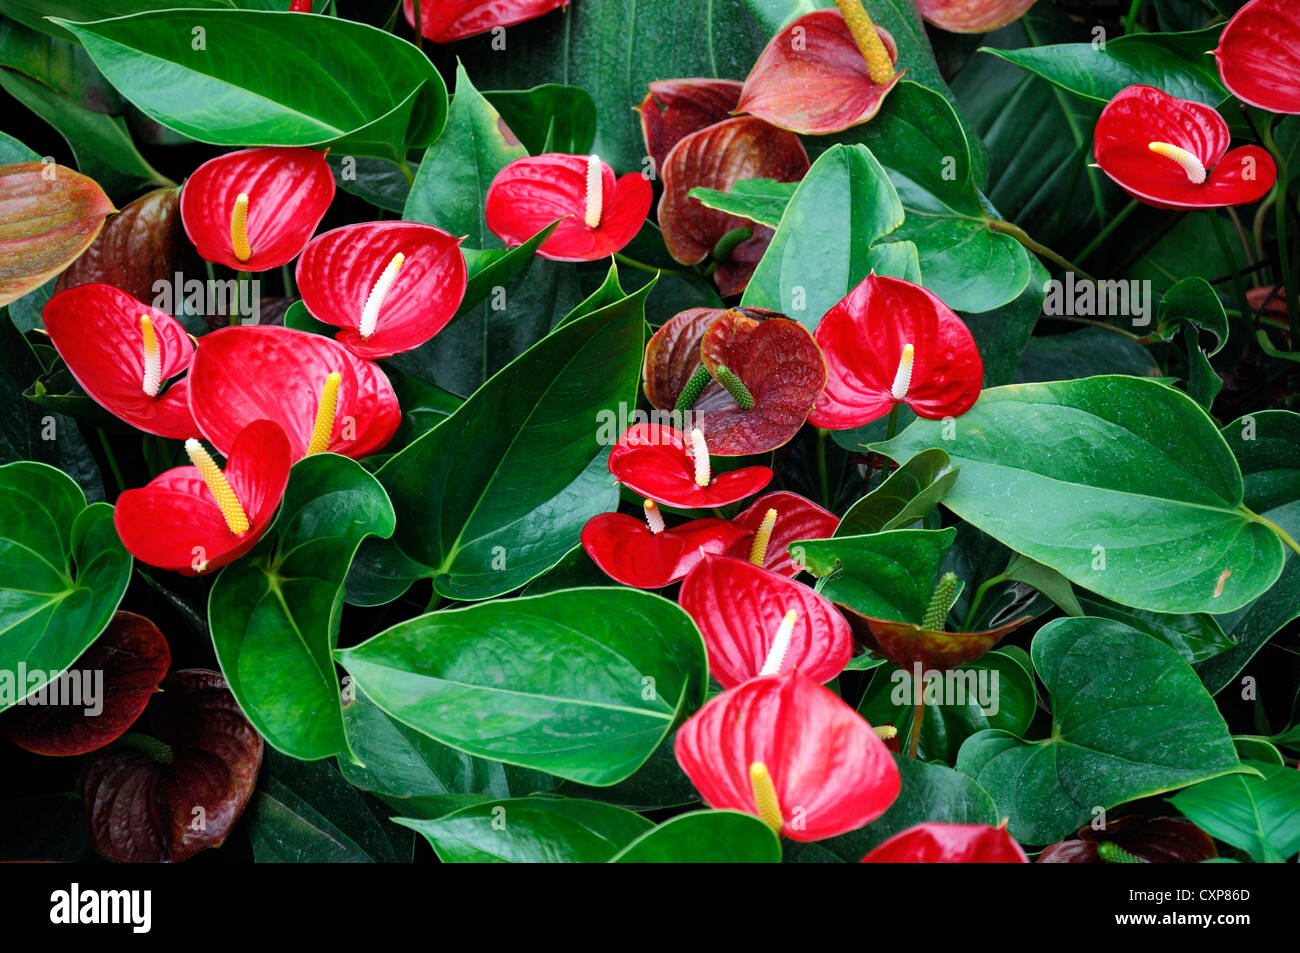 Schismatoglottis viridissima fiore rosso pianta tropicale aroid araceae Foto Stock